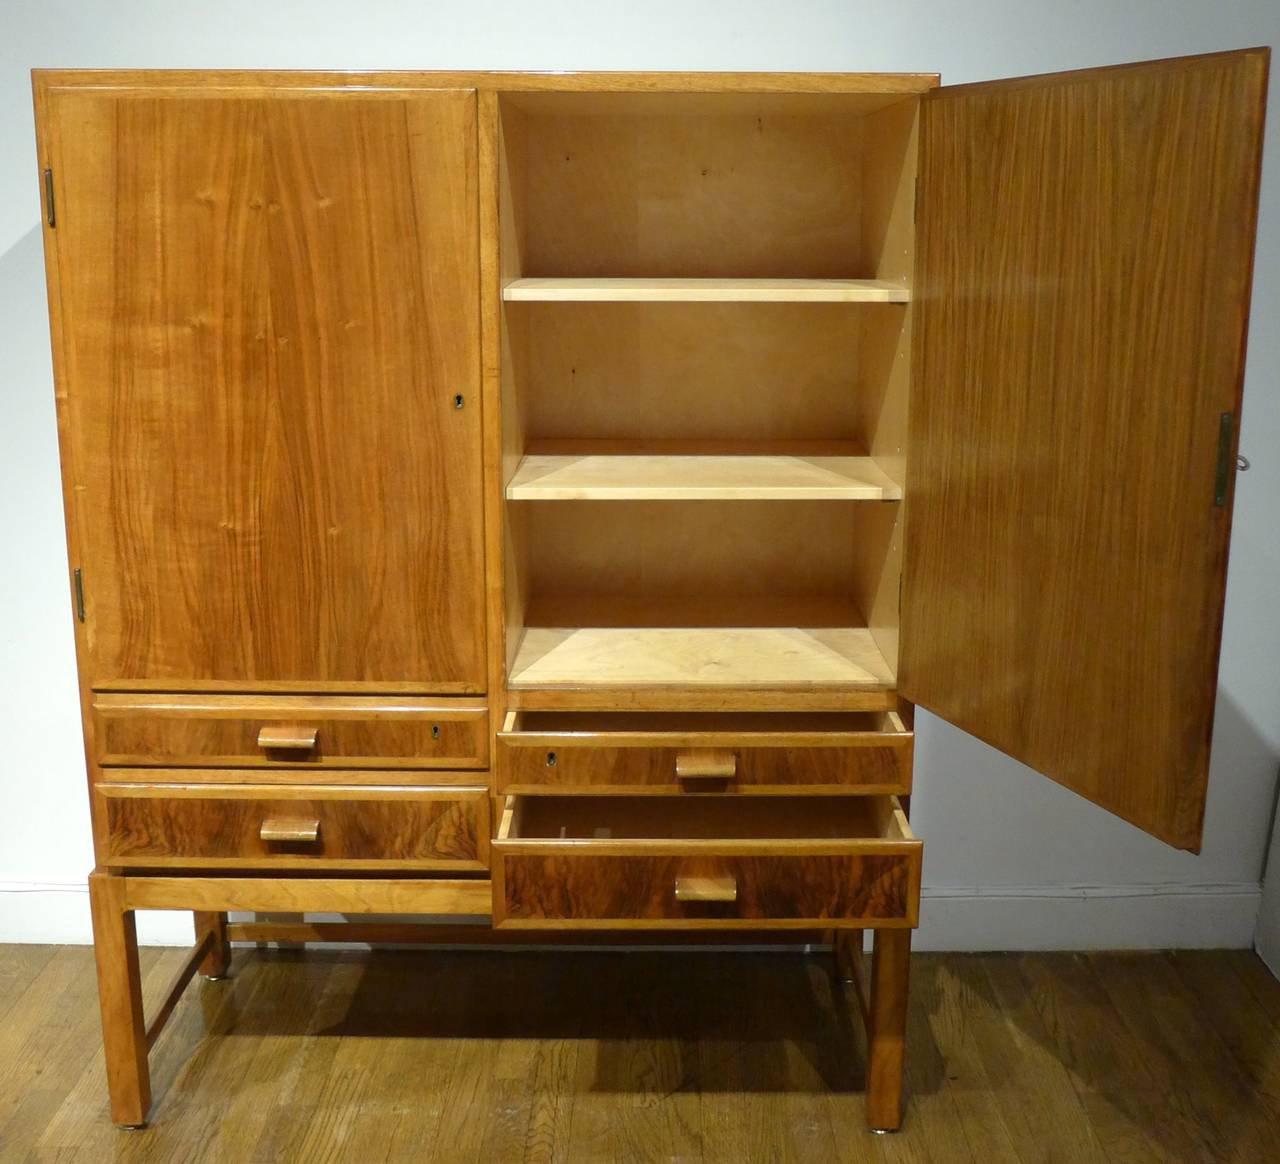 Birch Service Cabinet by Danish Craftsman Peder Pedersen